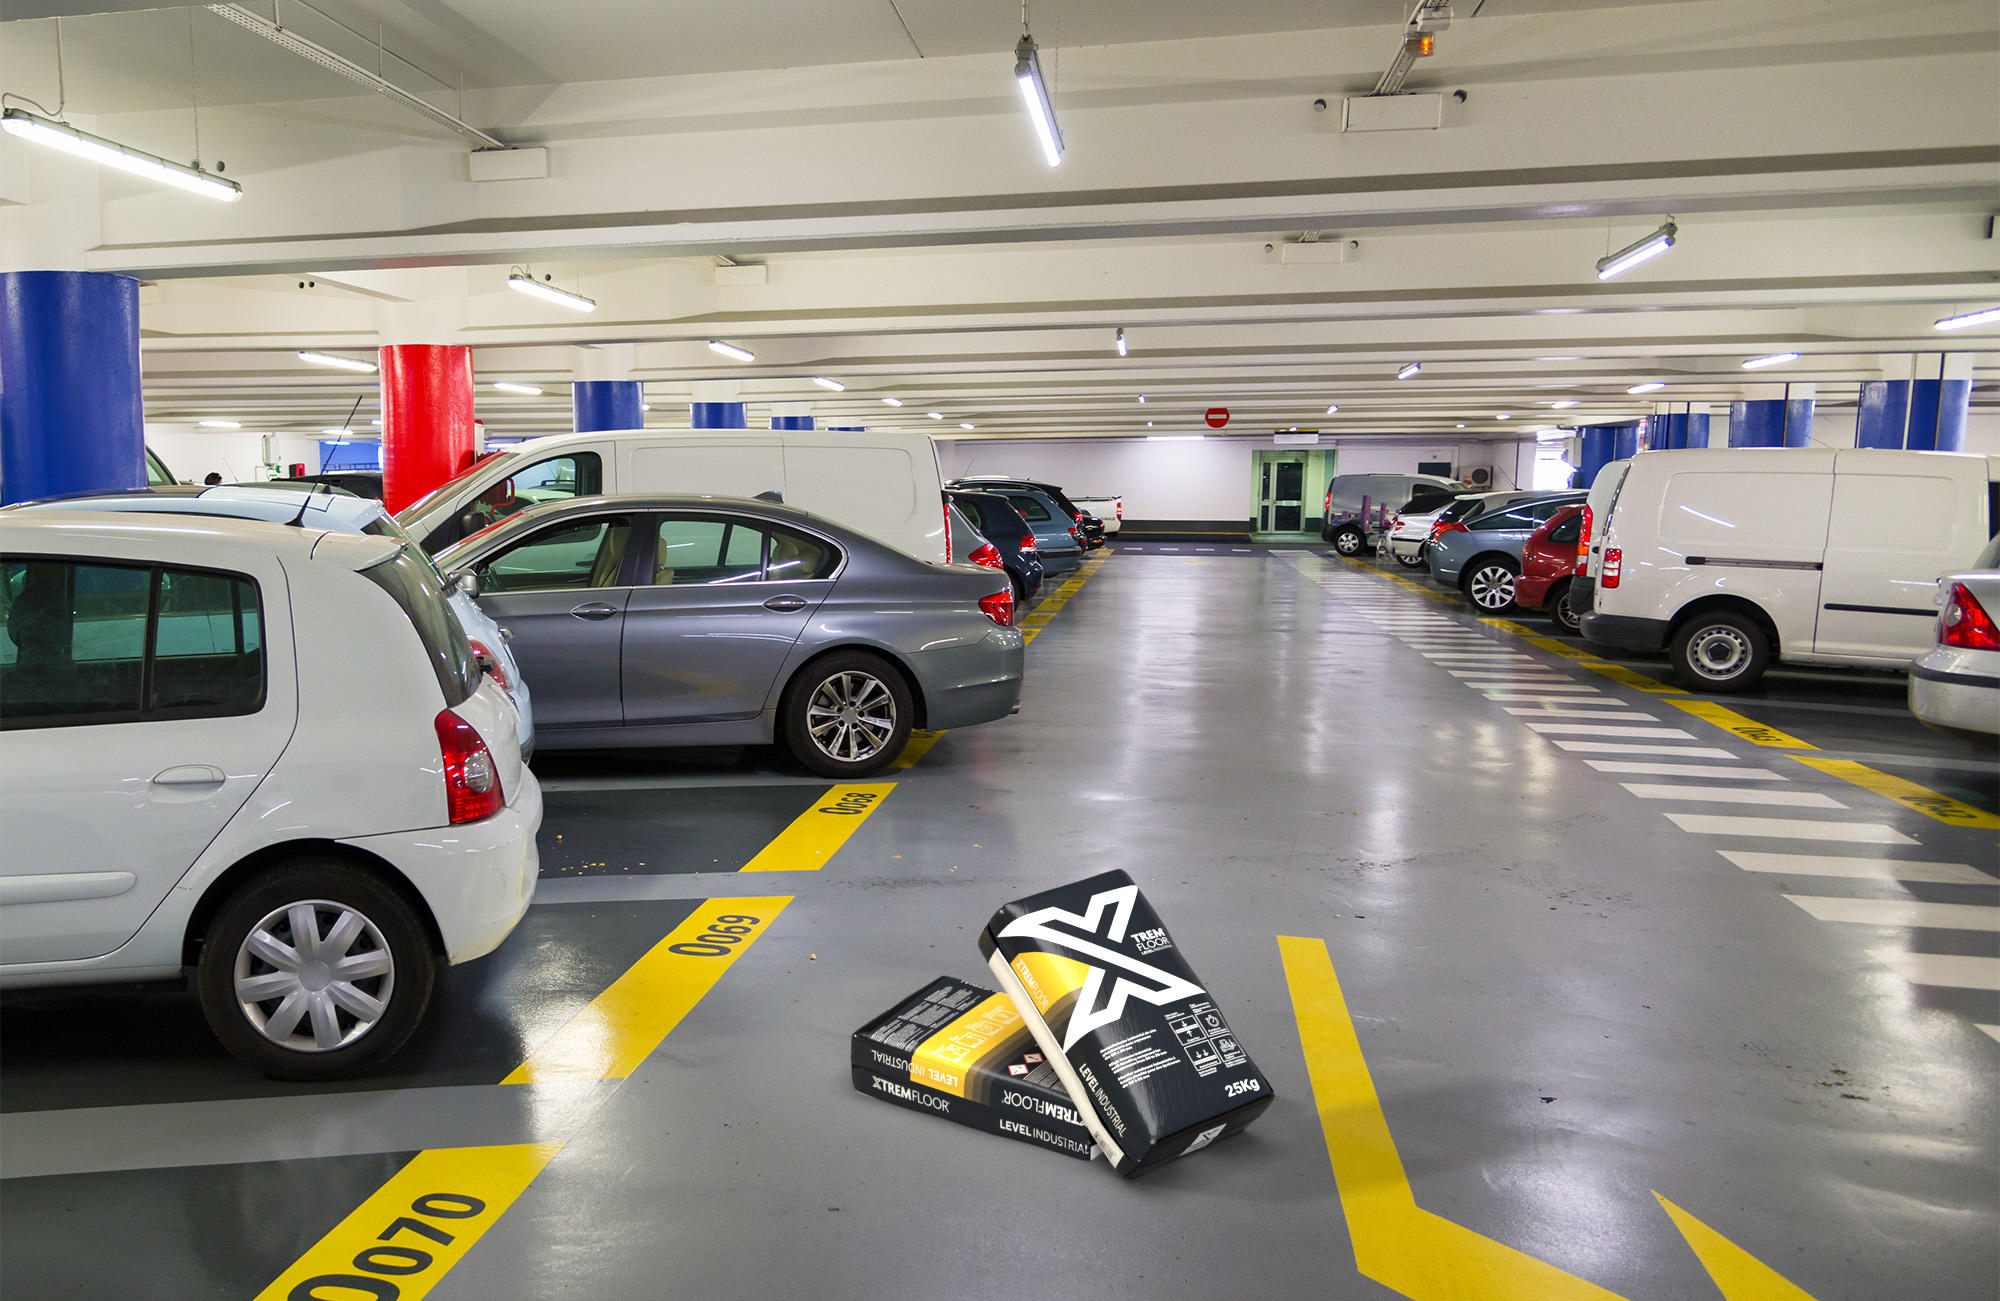   estacionamento com autonivelante industrial XTREMFLOOR® Level Industrial no pavimento